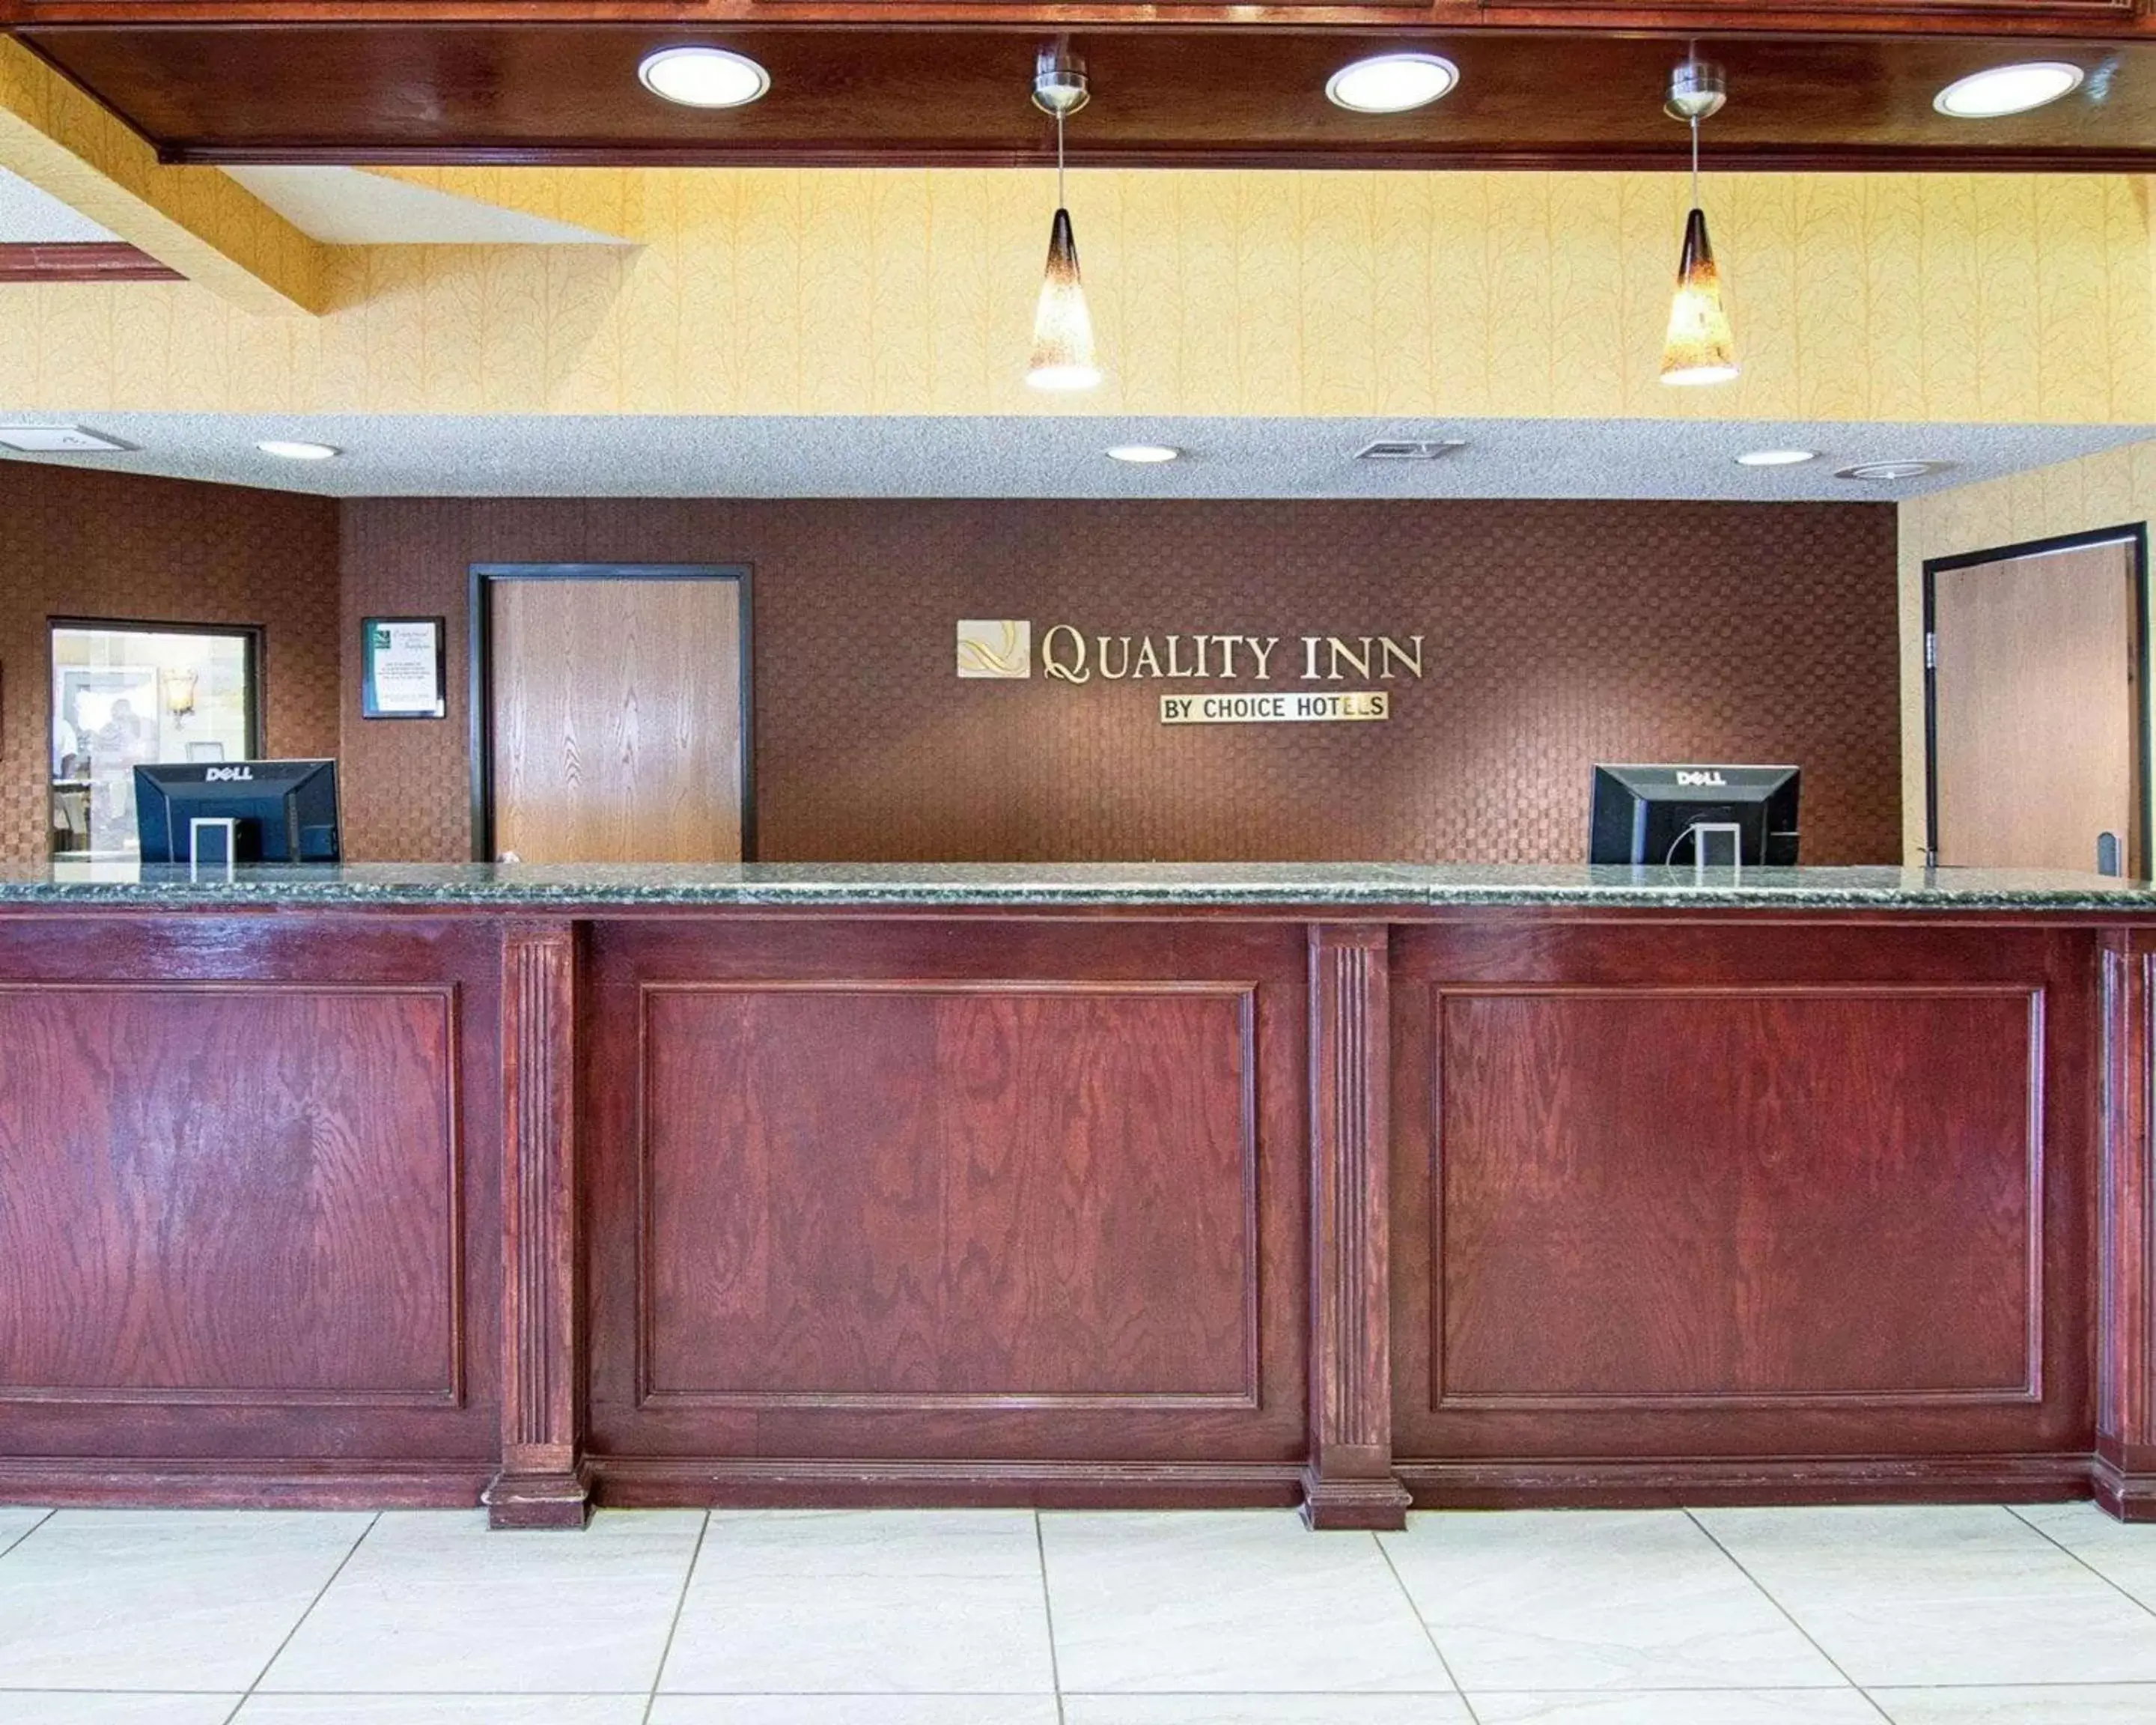 Lobby or reception, Lobby/Reception in Quality Inn Midland